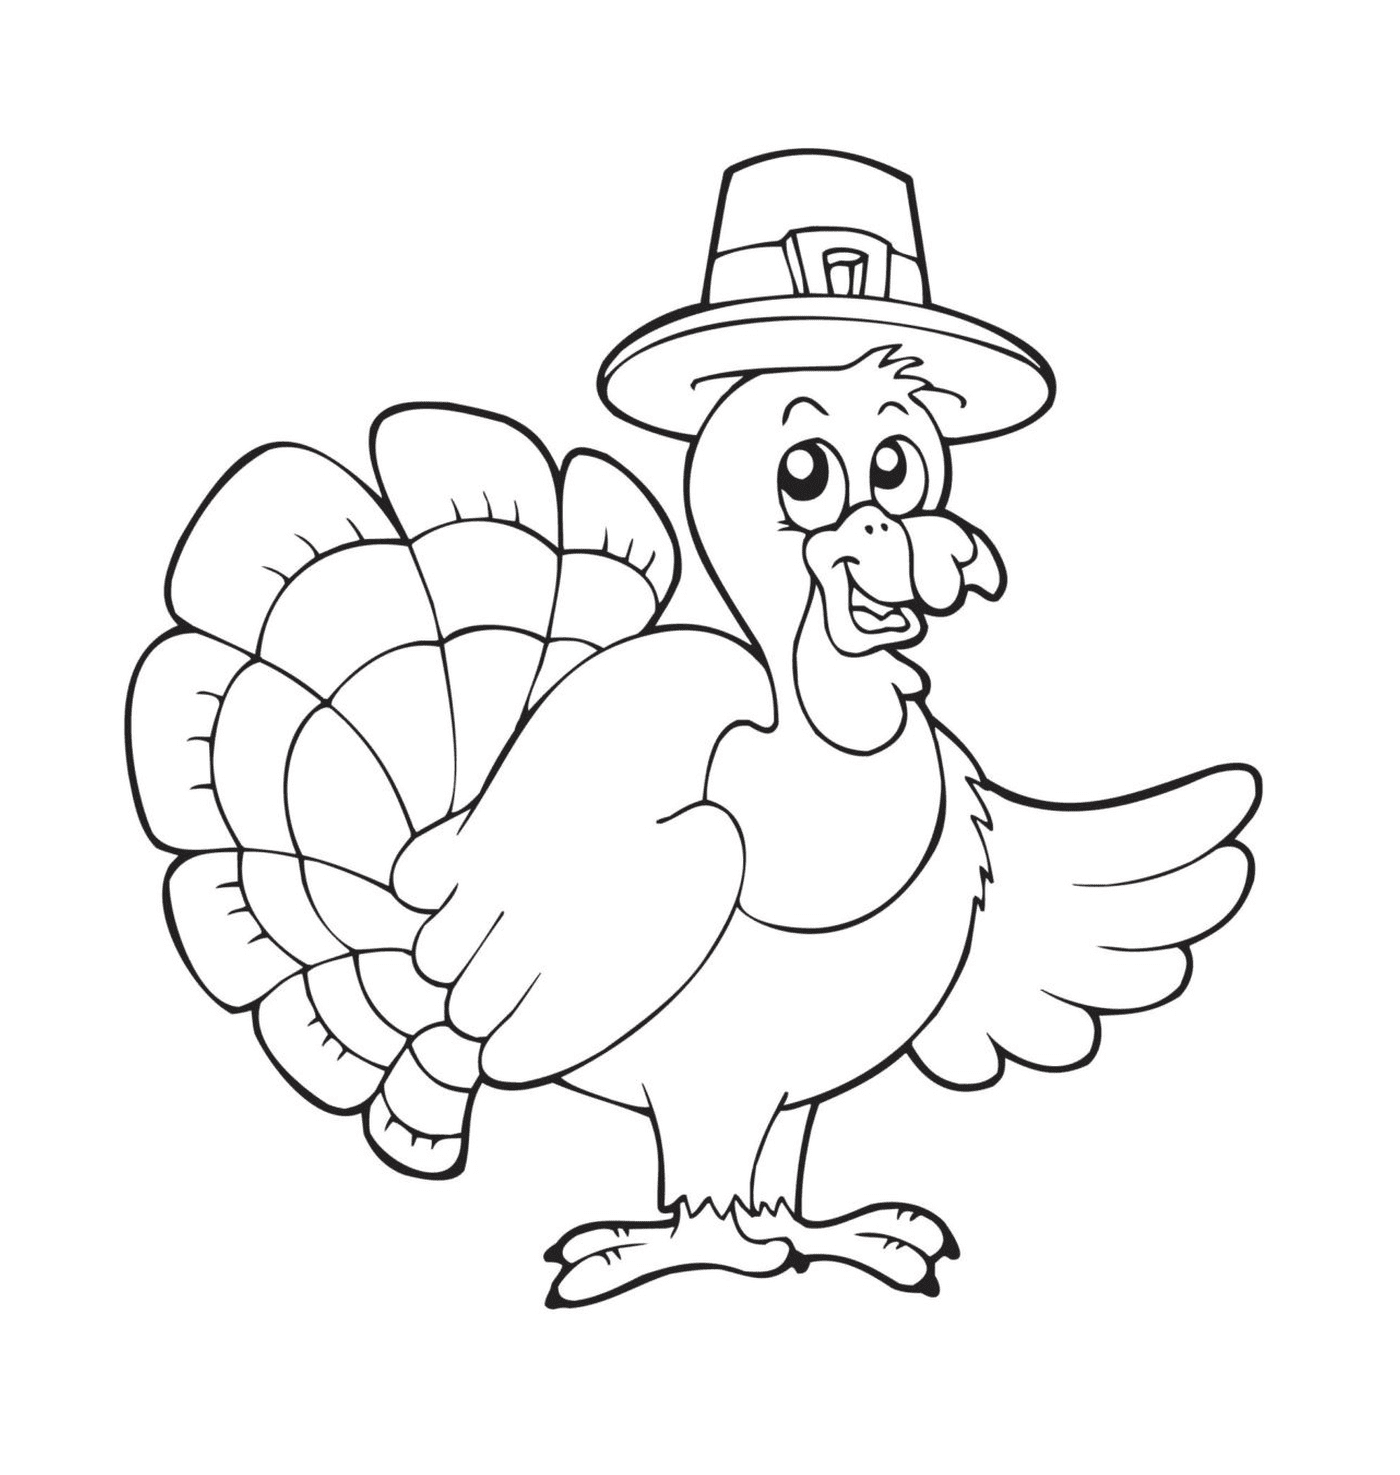  Thanksgiving Türkei festlich 